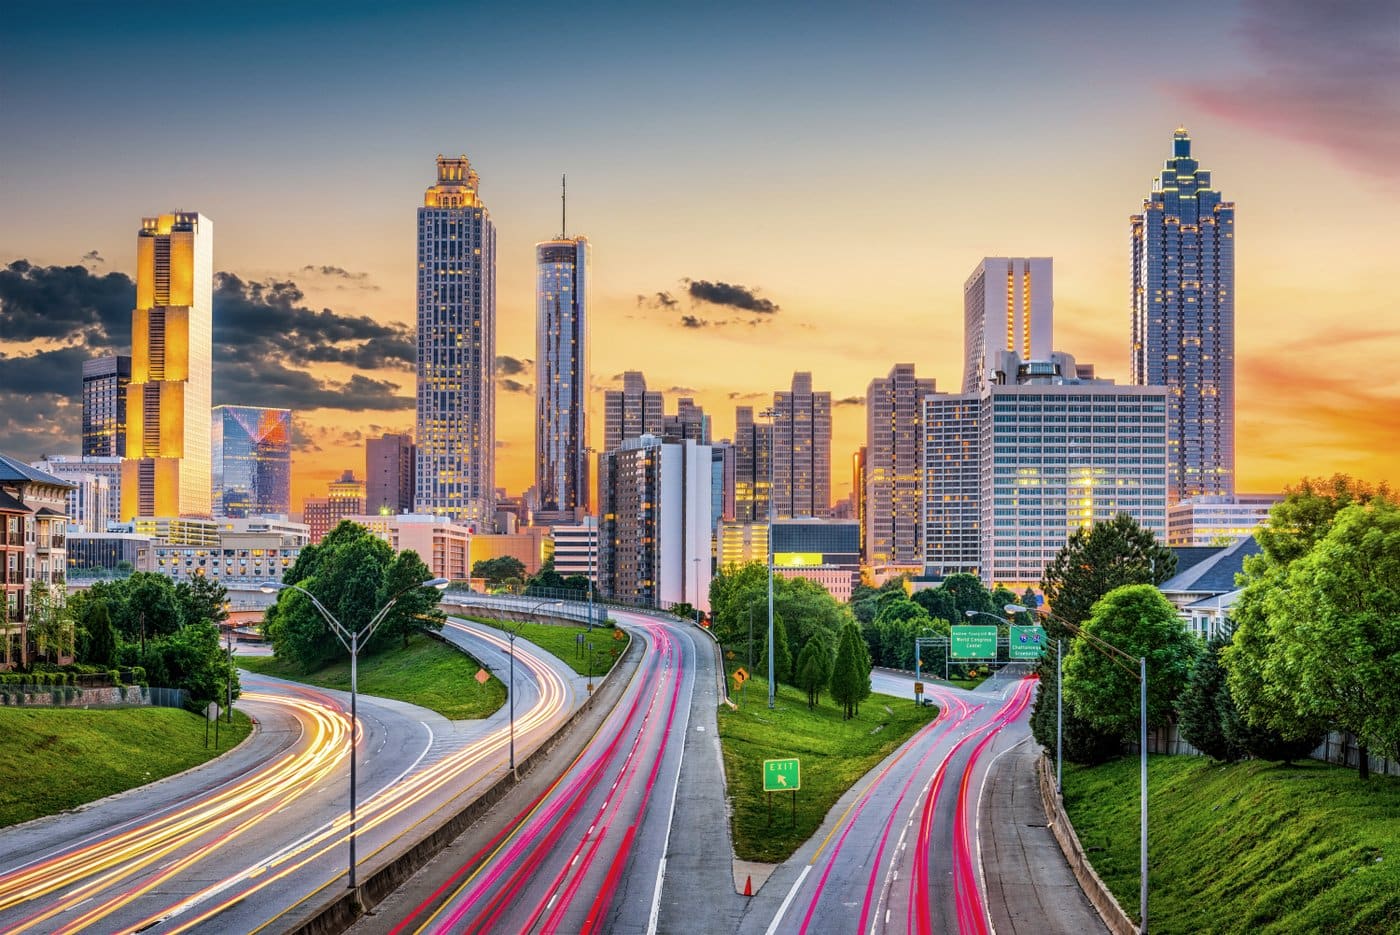 Merging freeway traffic in Atlanta, Georgia